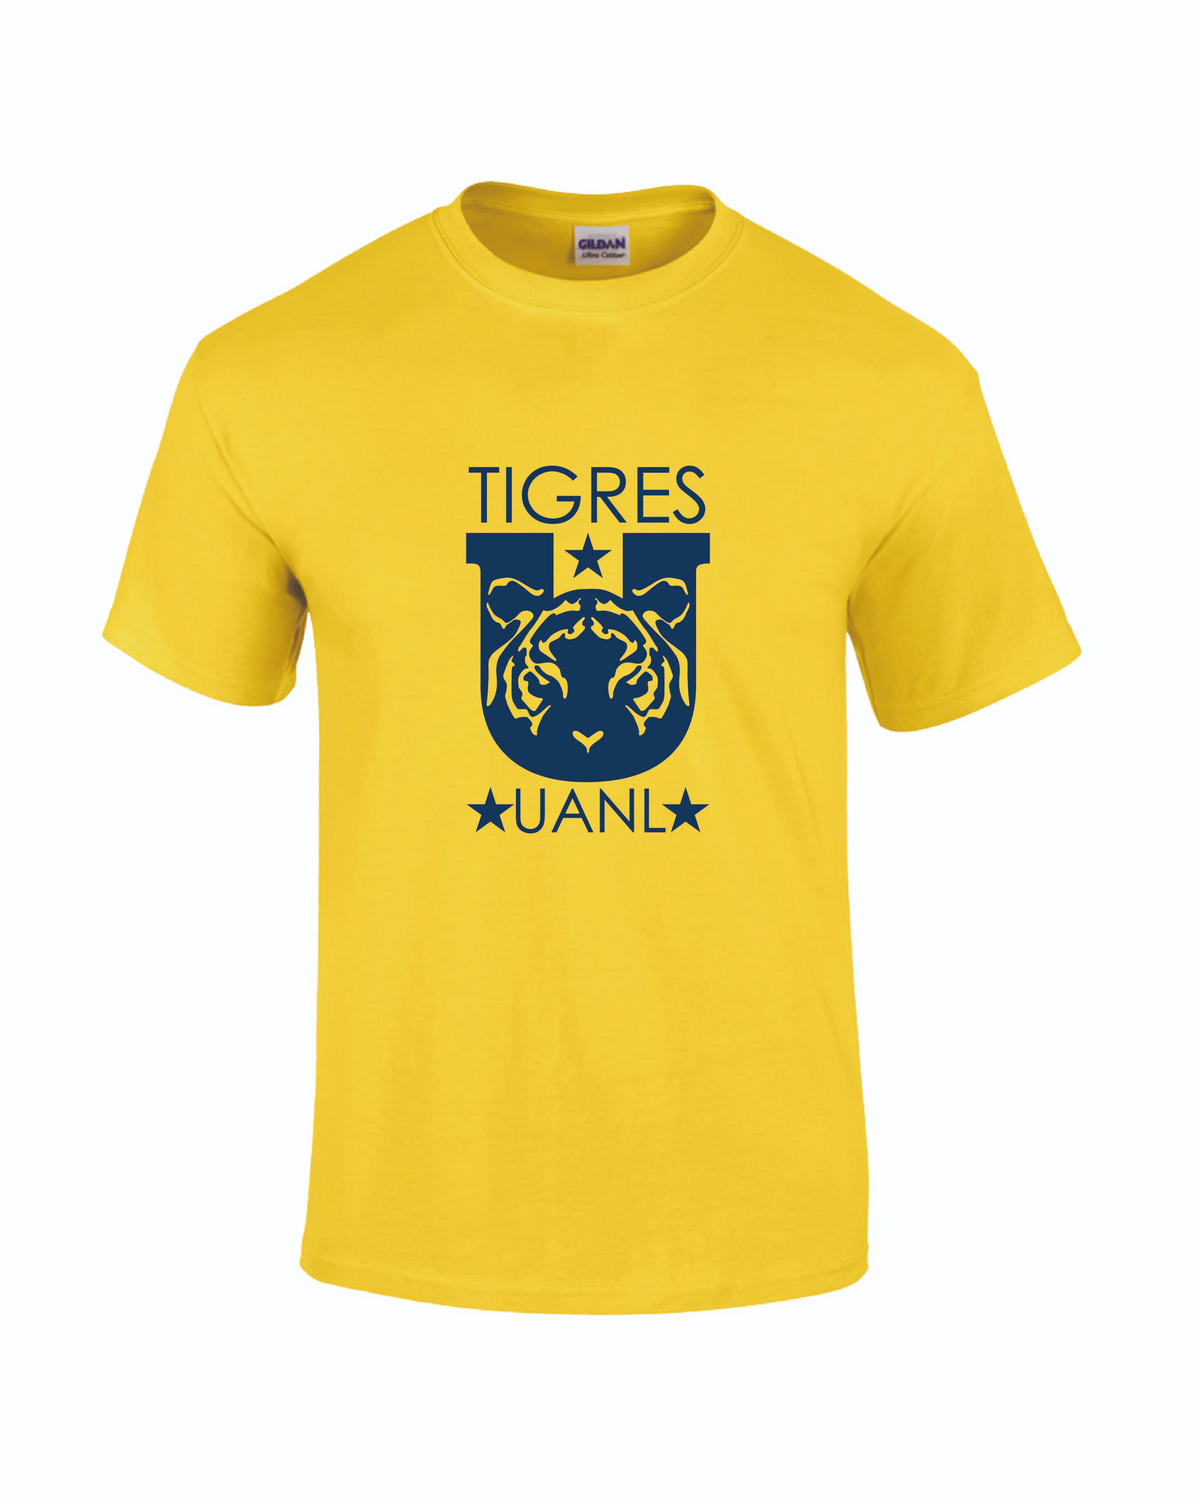 Tigres UANL Crest T-Shirt - Mens